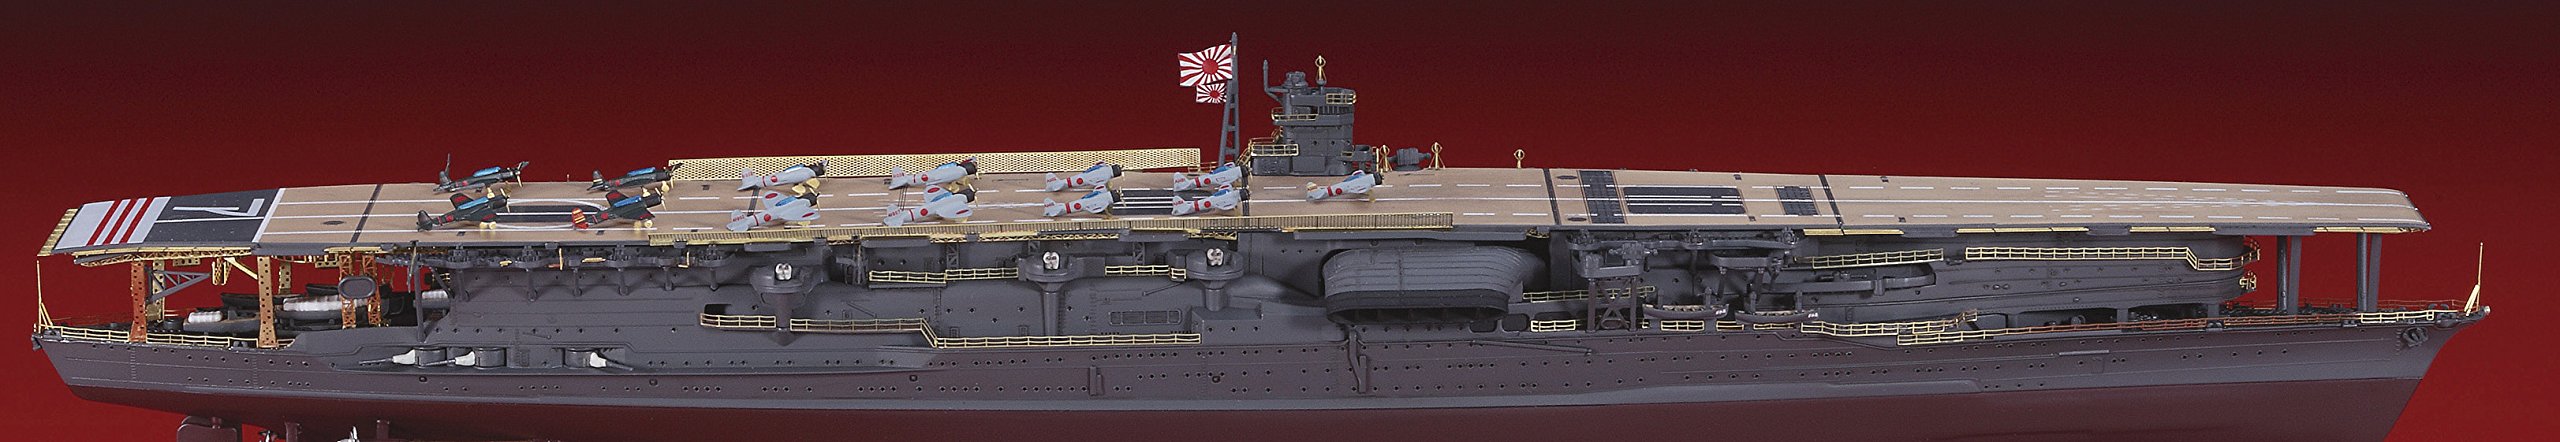 Hasegawa 30036 1/700 porte-avions de la marine japonaise Akagi détail pièces ensemble pièces de modèle en plastique